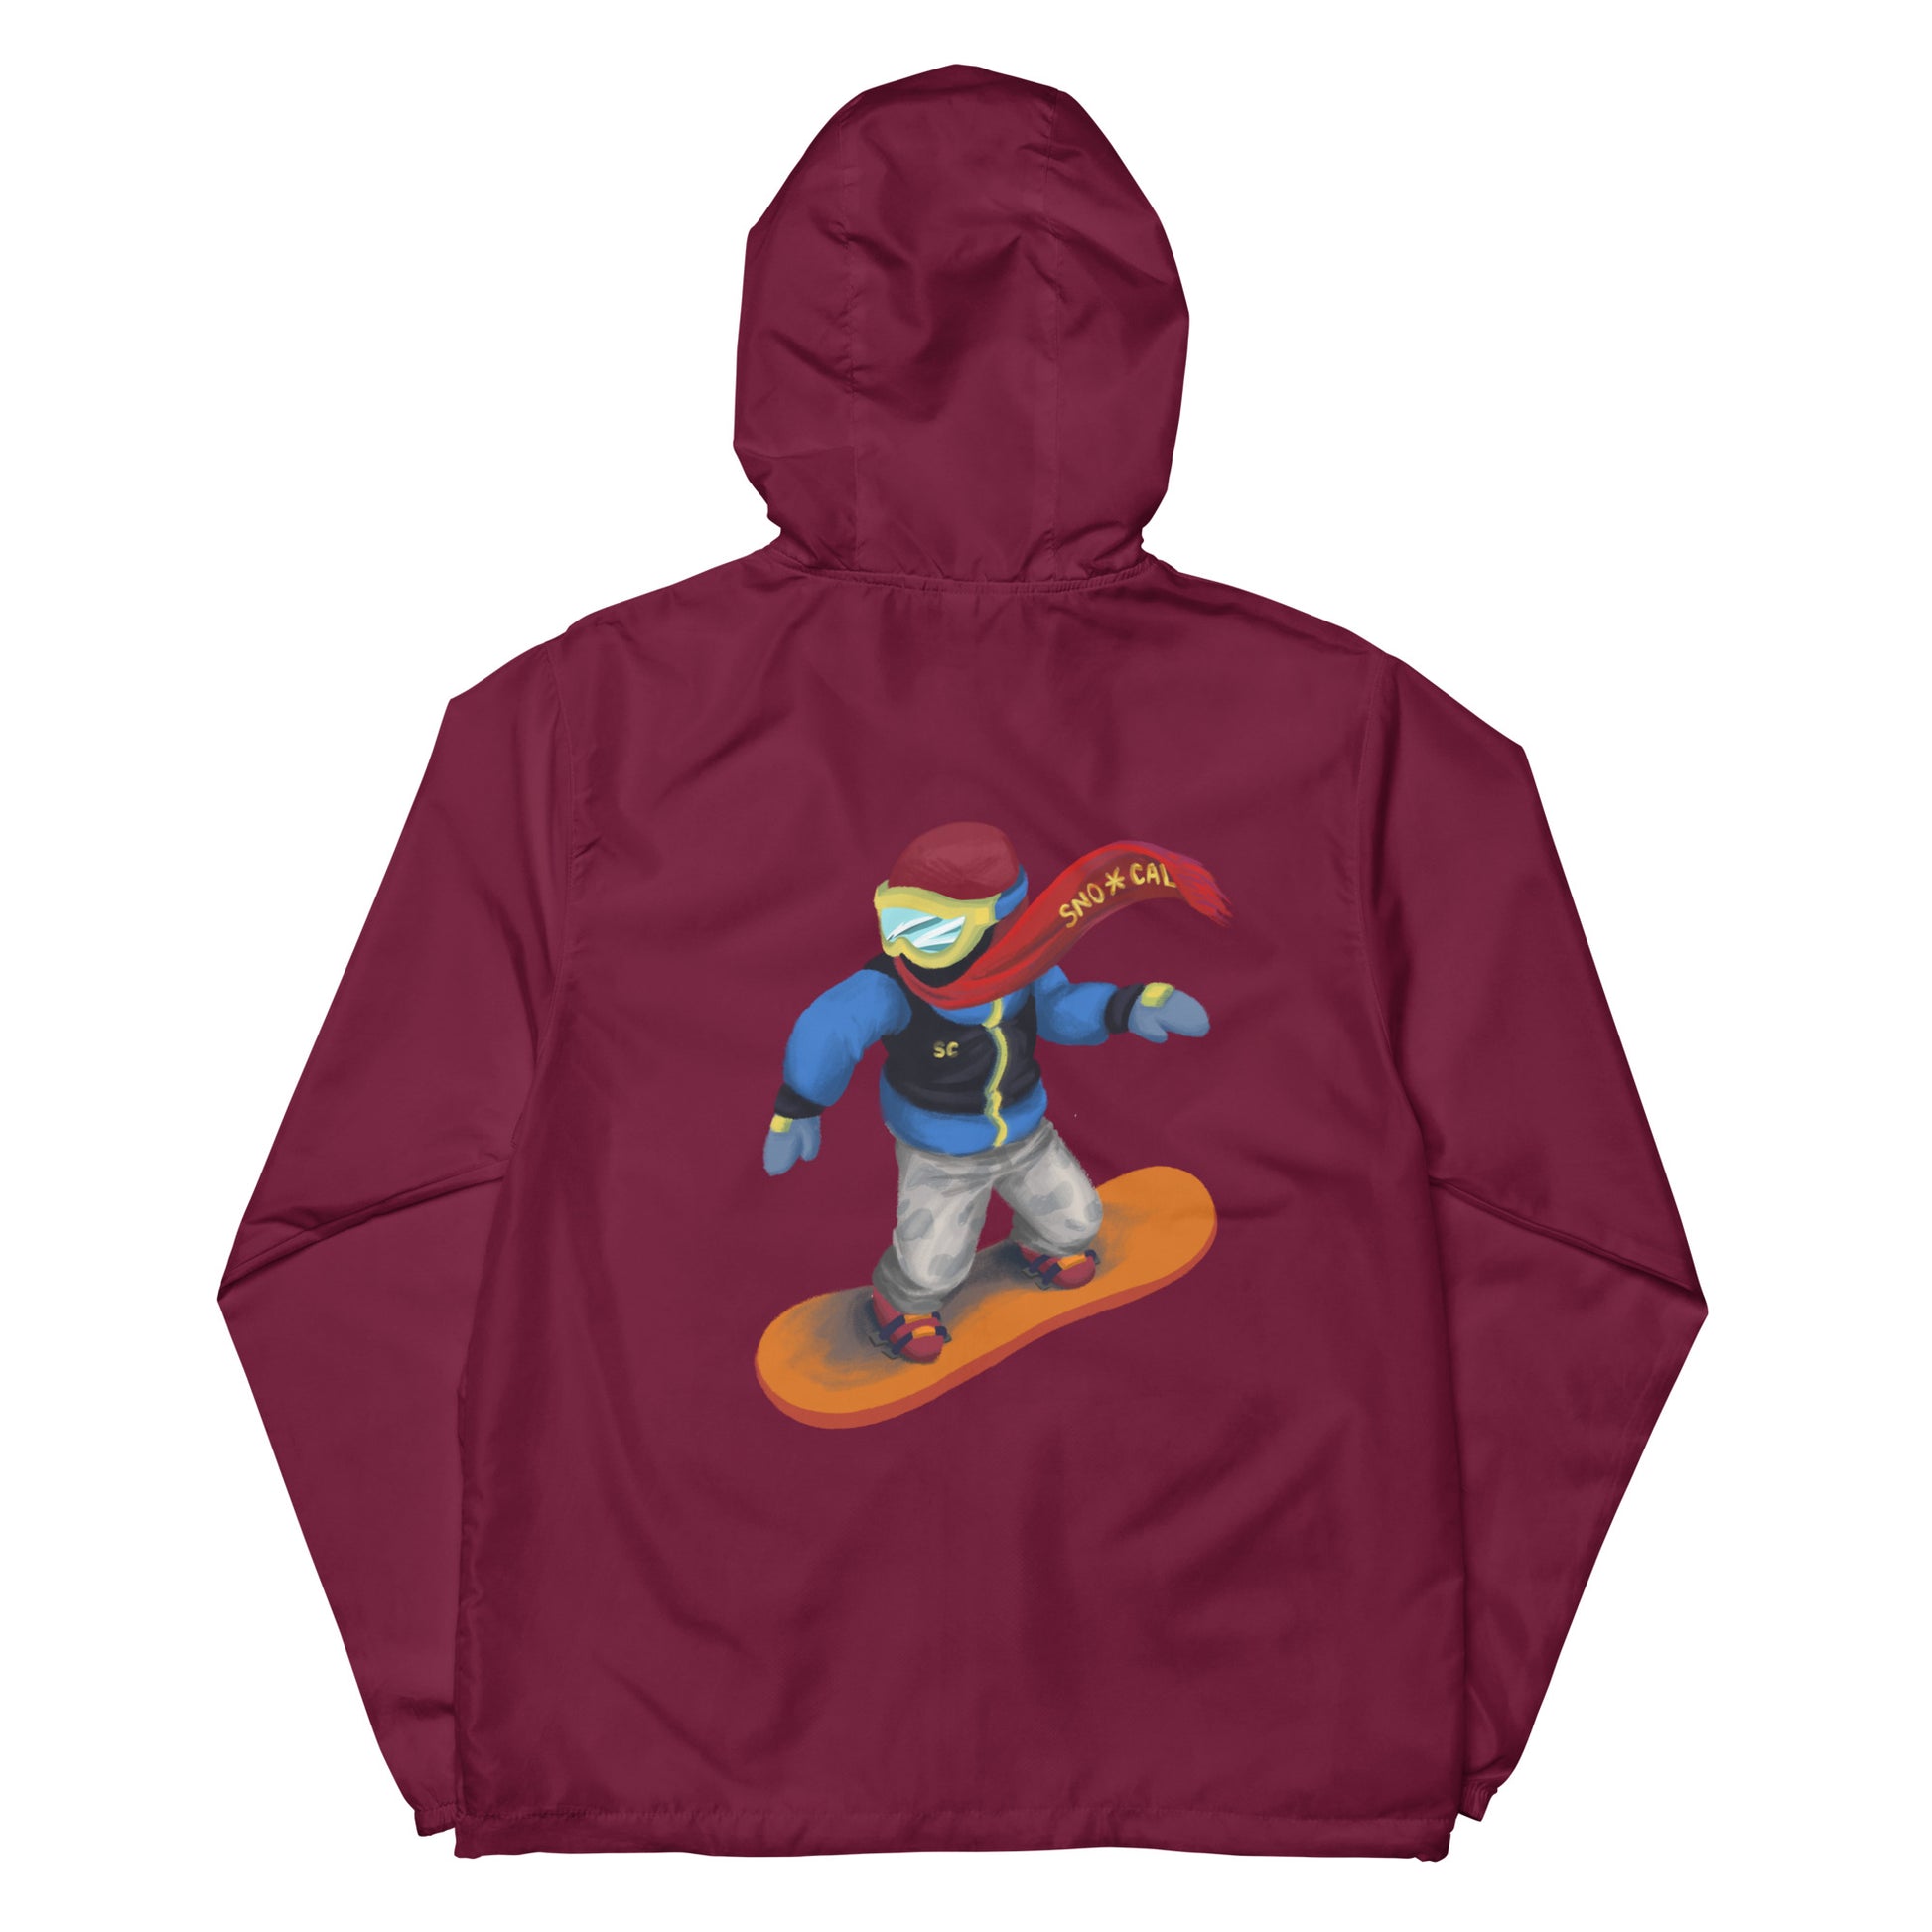 maroon zipper snowboard emoji hoodie